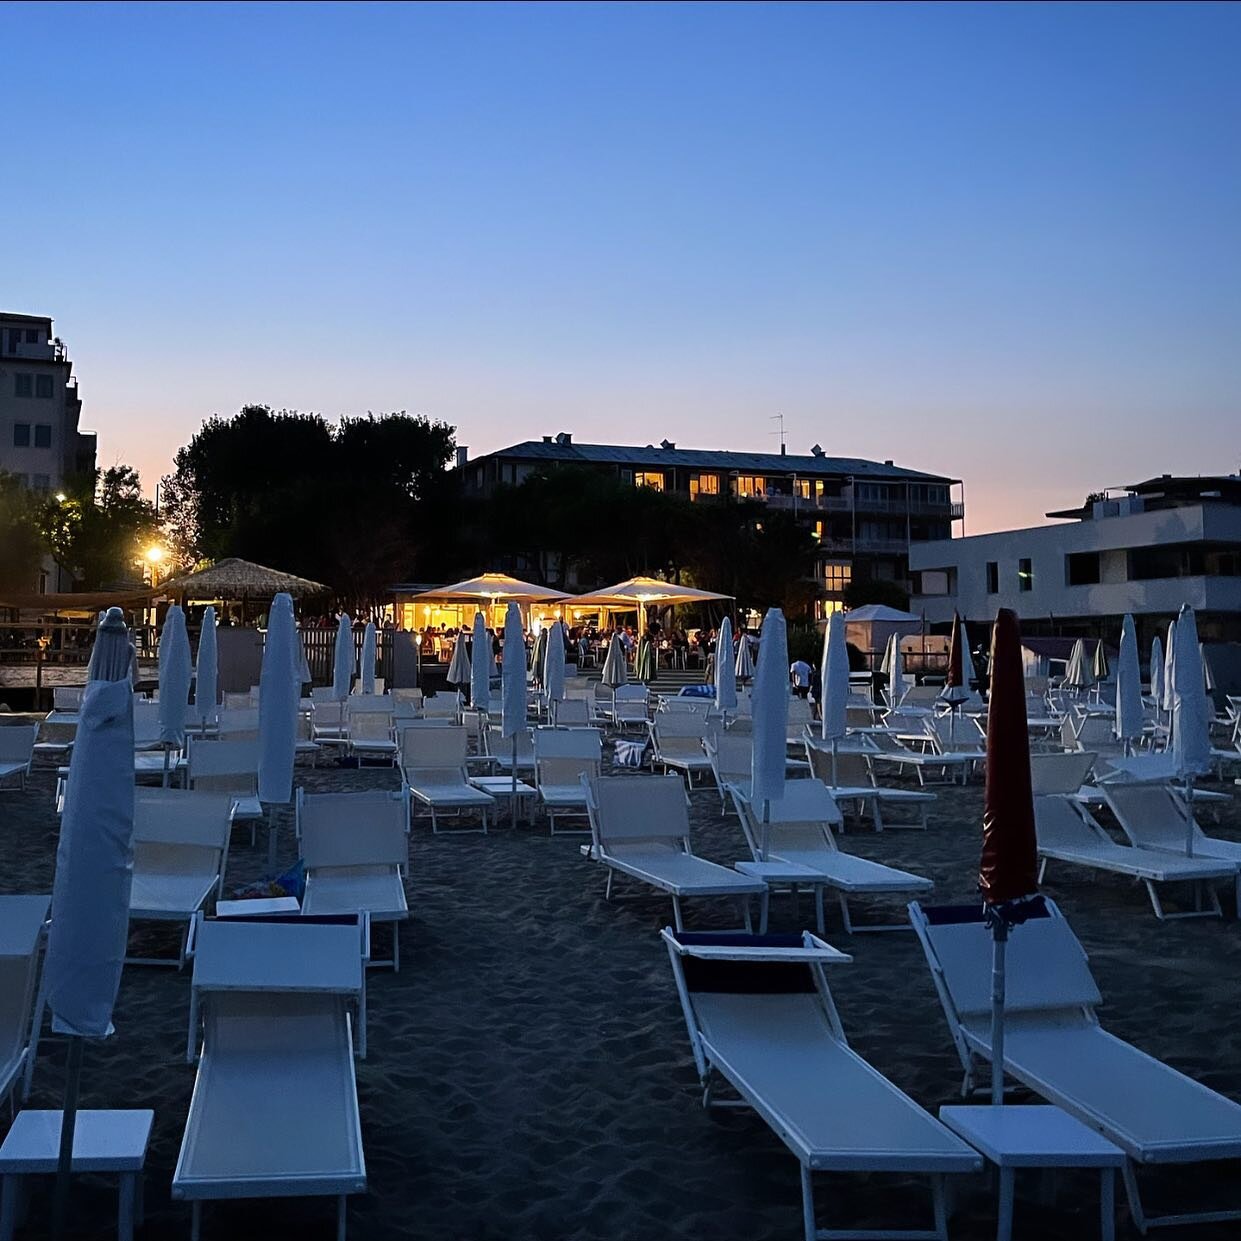 SATURDAY NIGHT BAGNO MARCONI ⭐️

#summervibes #ristorante #seaview #lidodivenezia